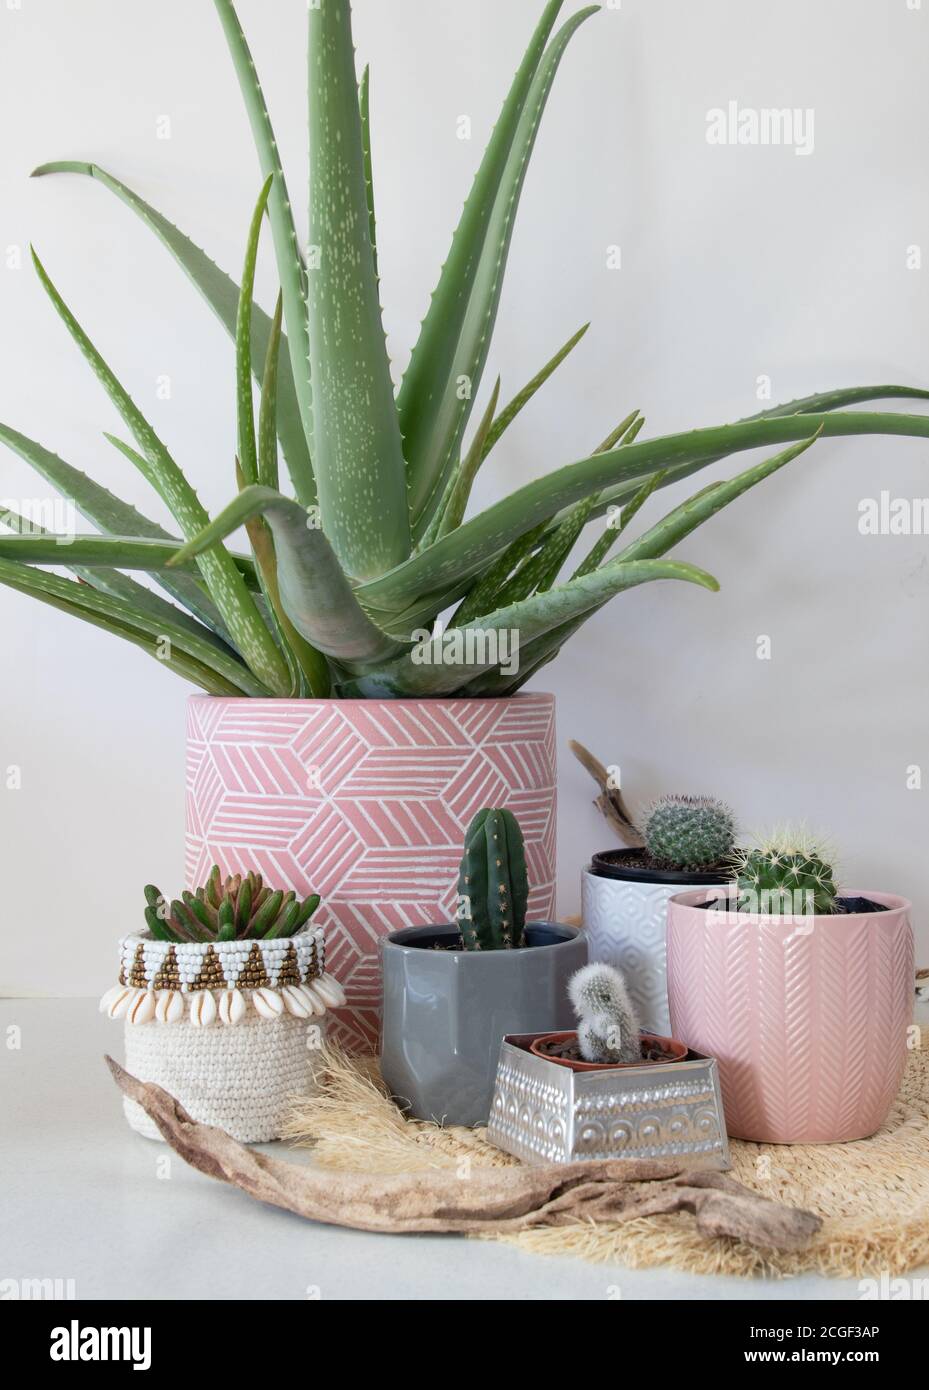 groupe de plantes de maison succulentes cactus et aloe vera Banque D'Images